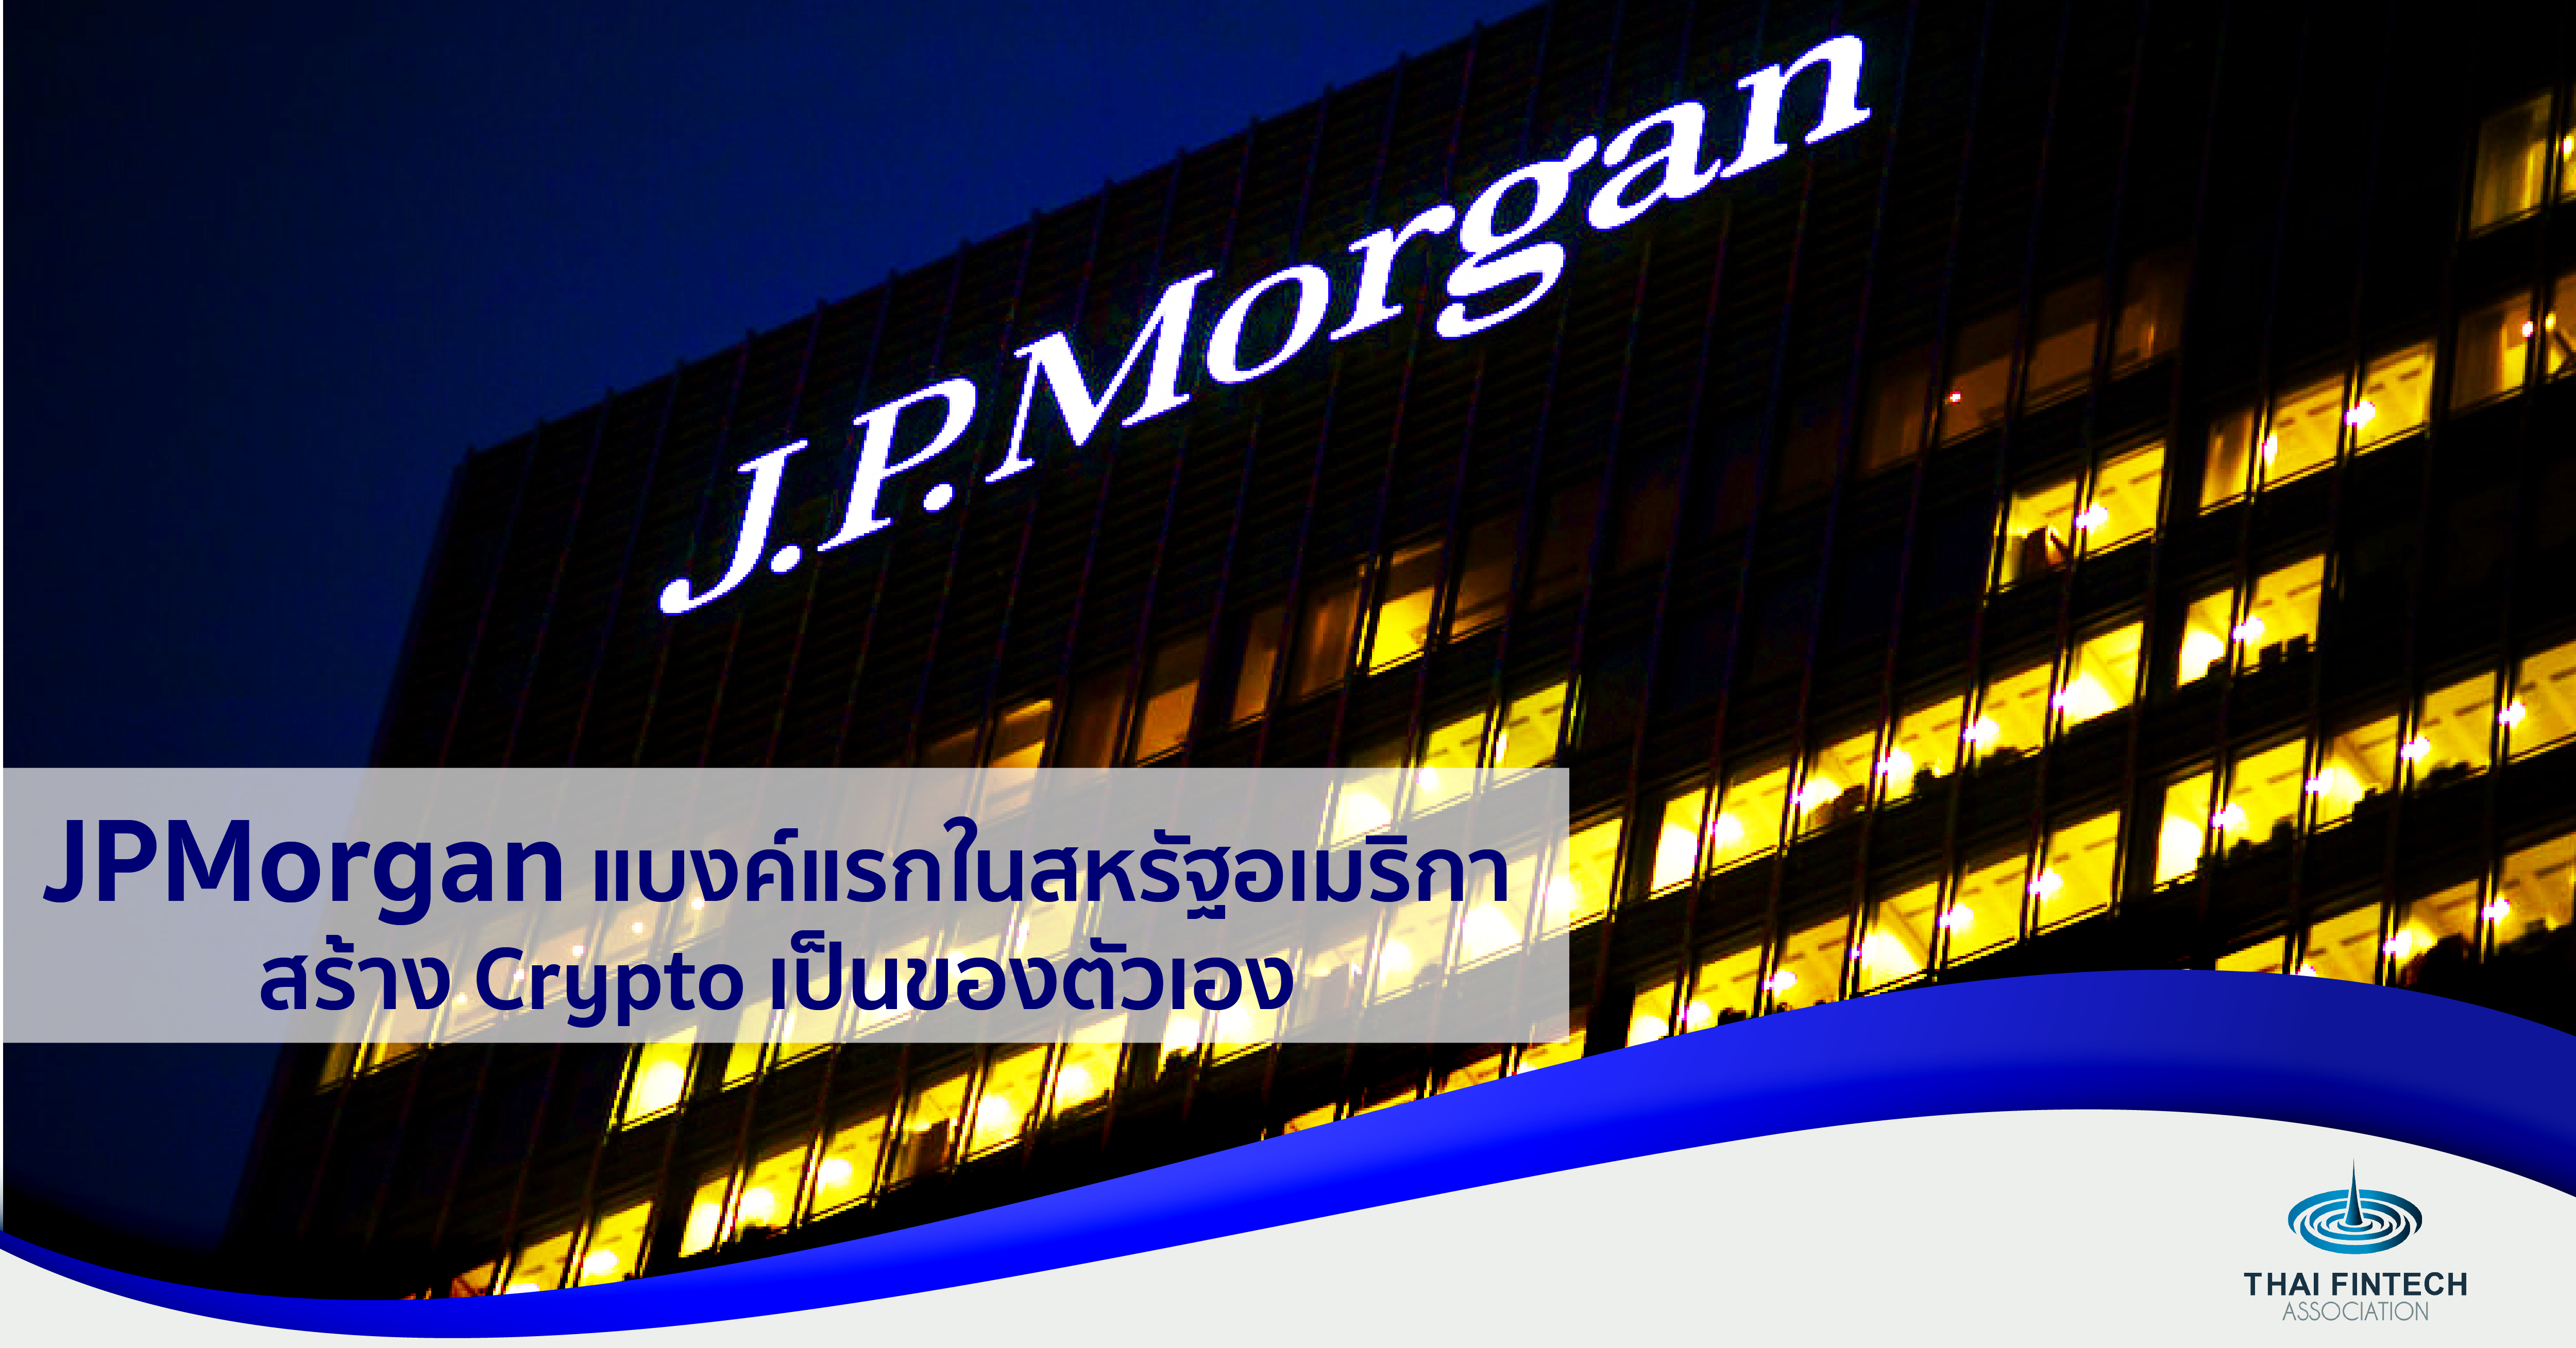 JPMorgan แบงค์แรกในสหรัฐสร้าง Crypto เป็นของตัวเอง